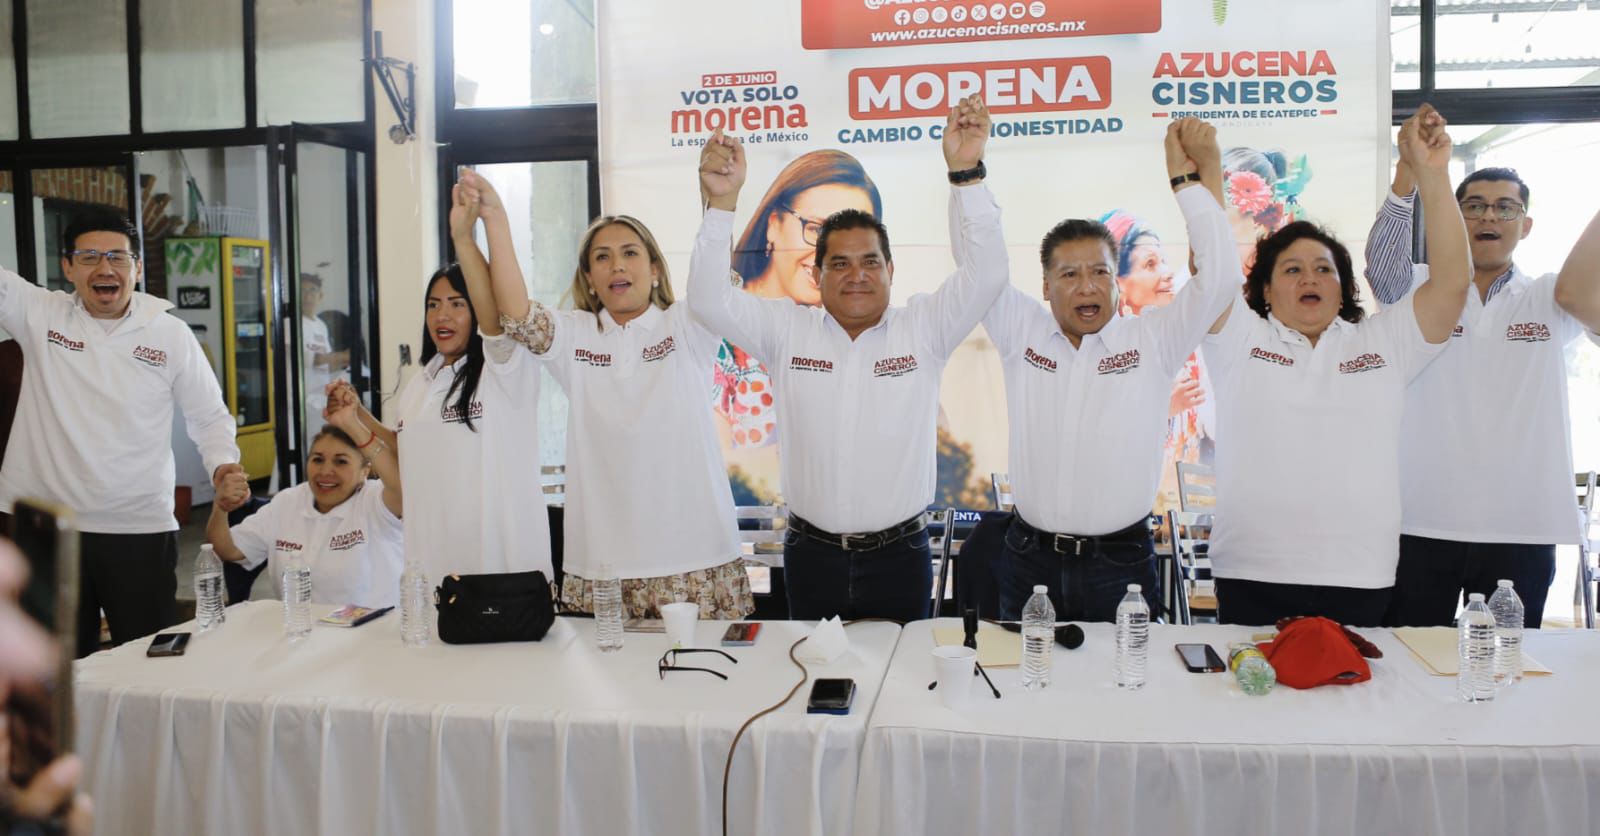 Líderes del PT, MC y PRI respaldan a Azucena Cisneros en Ecatepec 